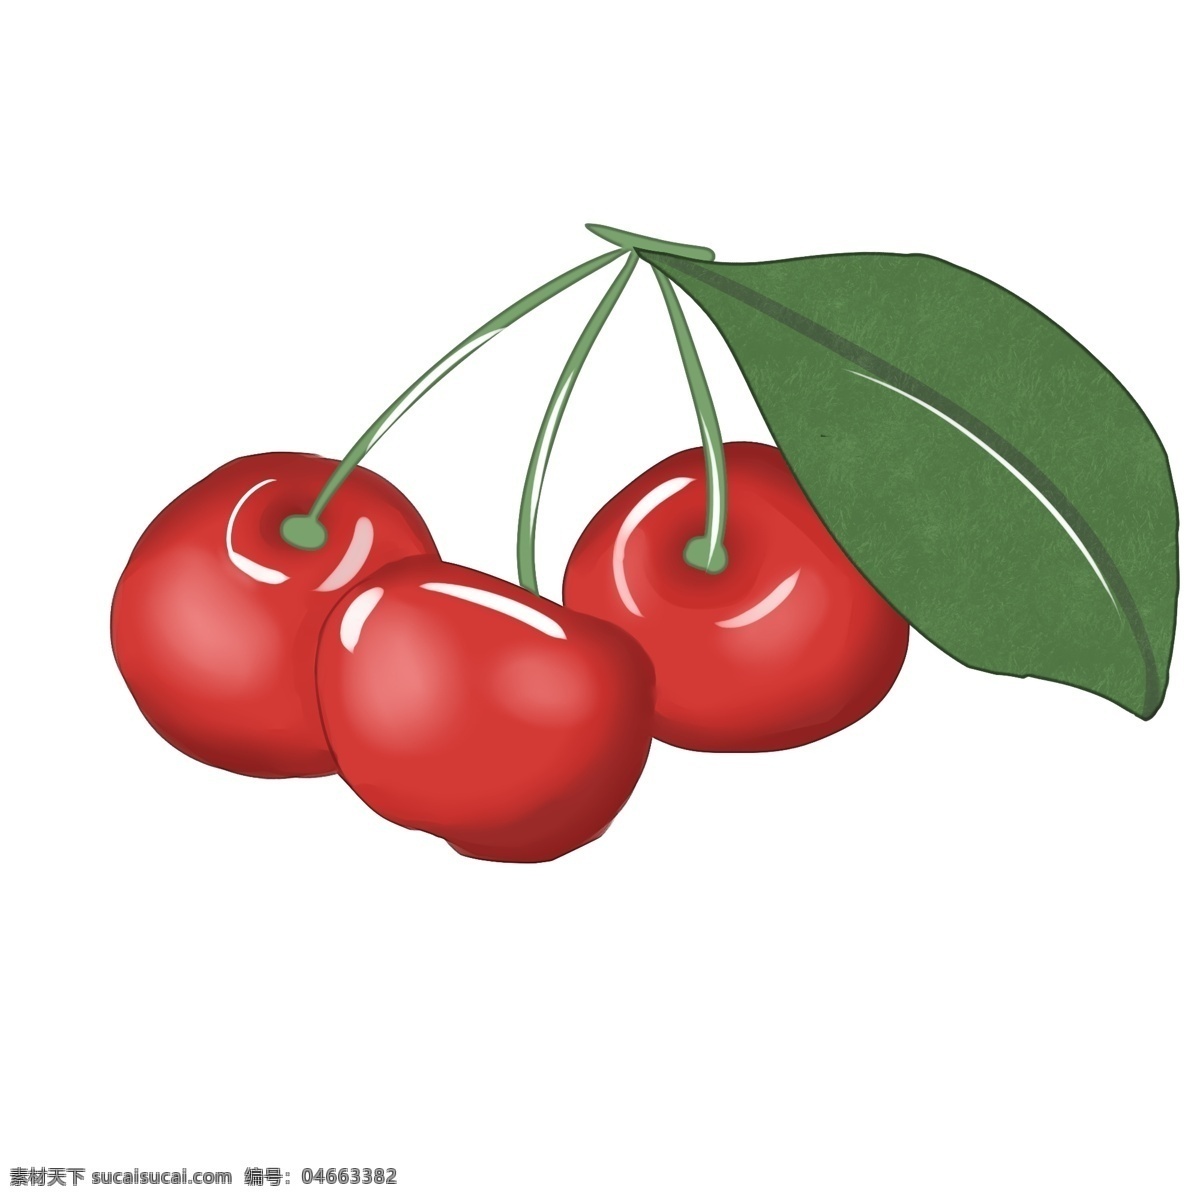 樱桃 清新 水果 种植 生长 卡通 味道 植物 绿色食品 维生素 红色 装饰画 装饰 大自然 培育 甜 圆形 绿色 可爱